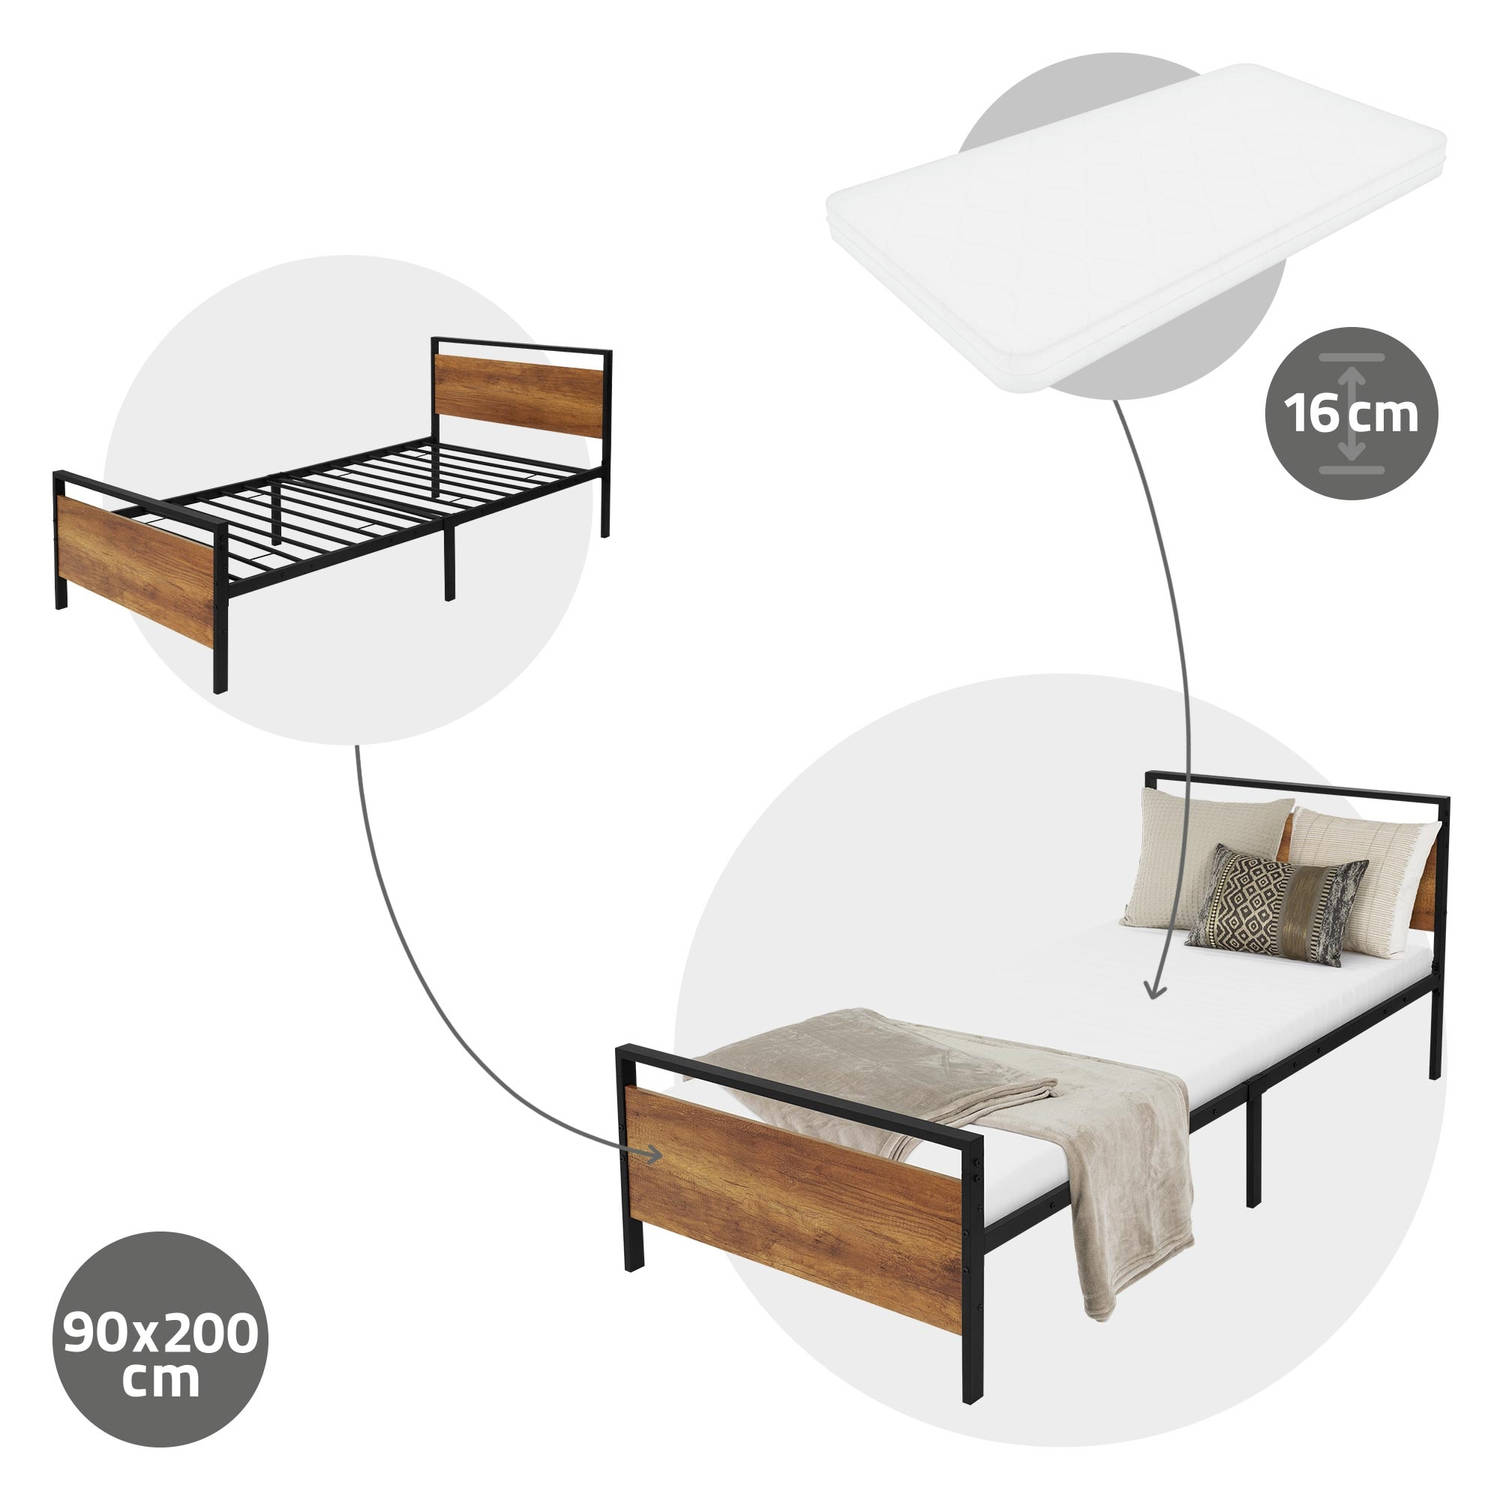 ML-Design metalen bed 90x200 cm met matras H:16 cm & lattenbodem bedframe met houten hoofdbord en vo